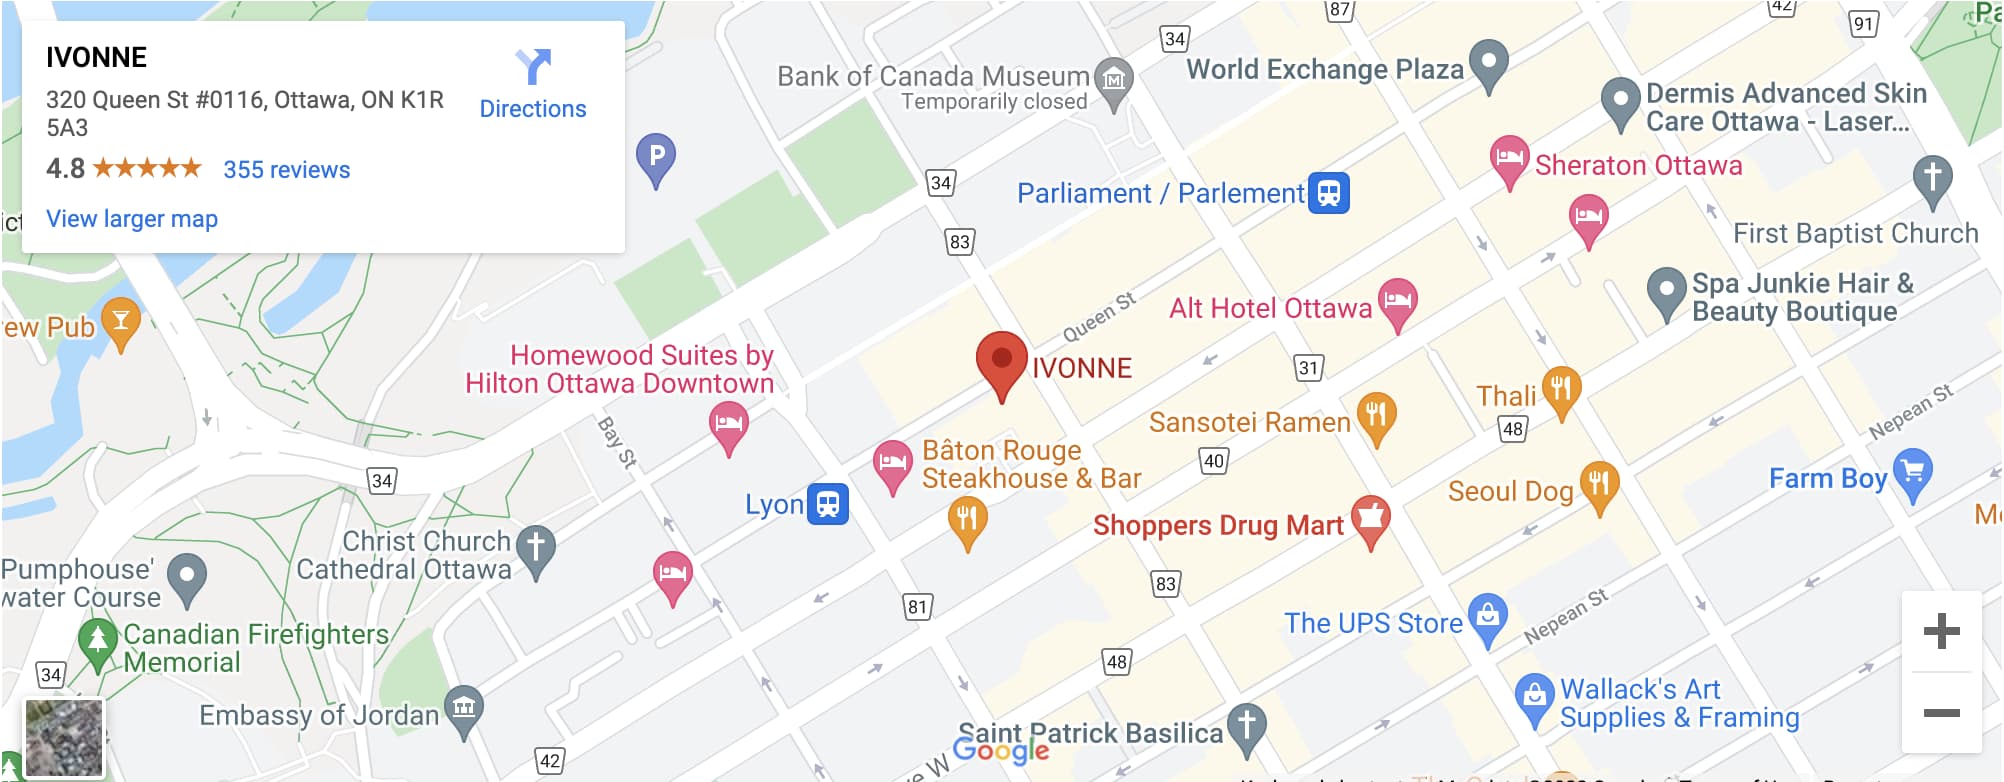 IVONNE Map 0116-320 Queen-Street Ottawa K1R_5A3